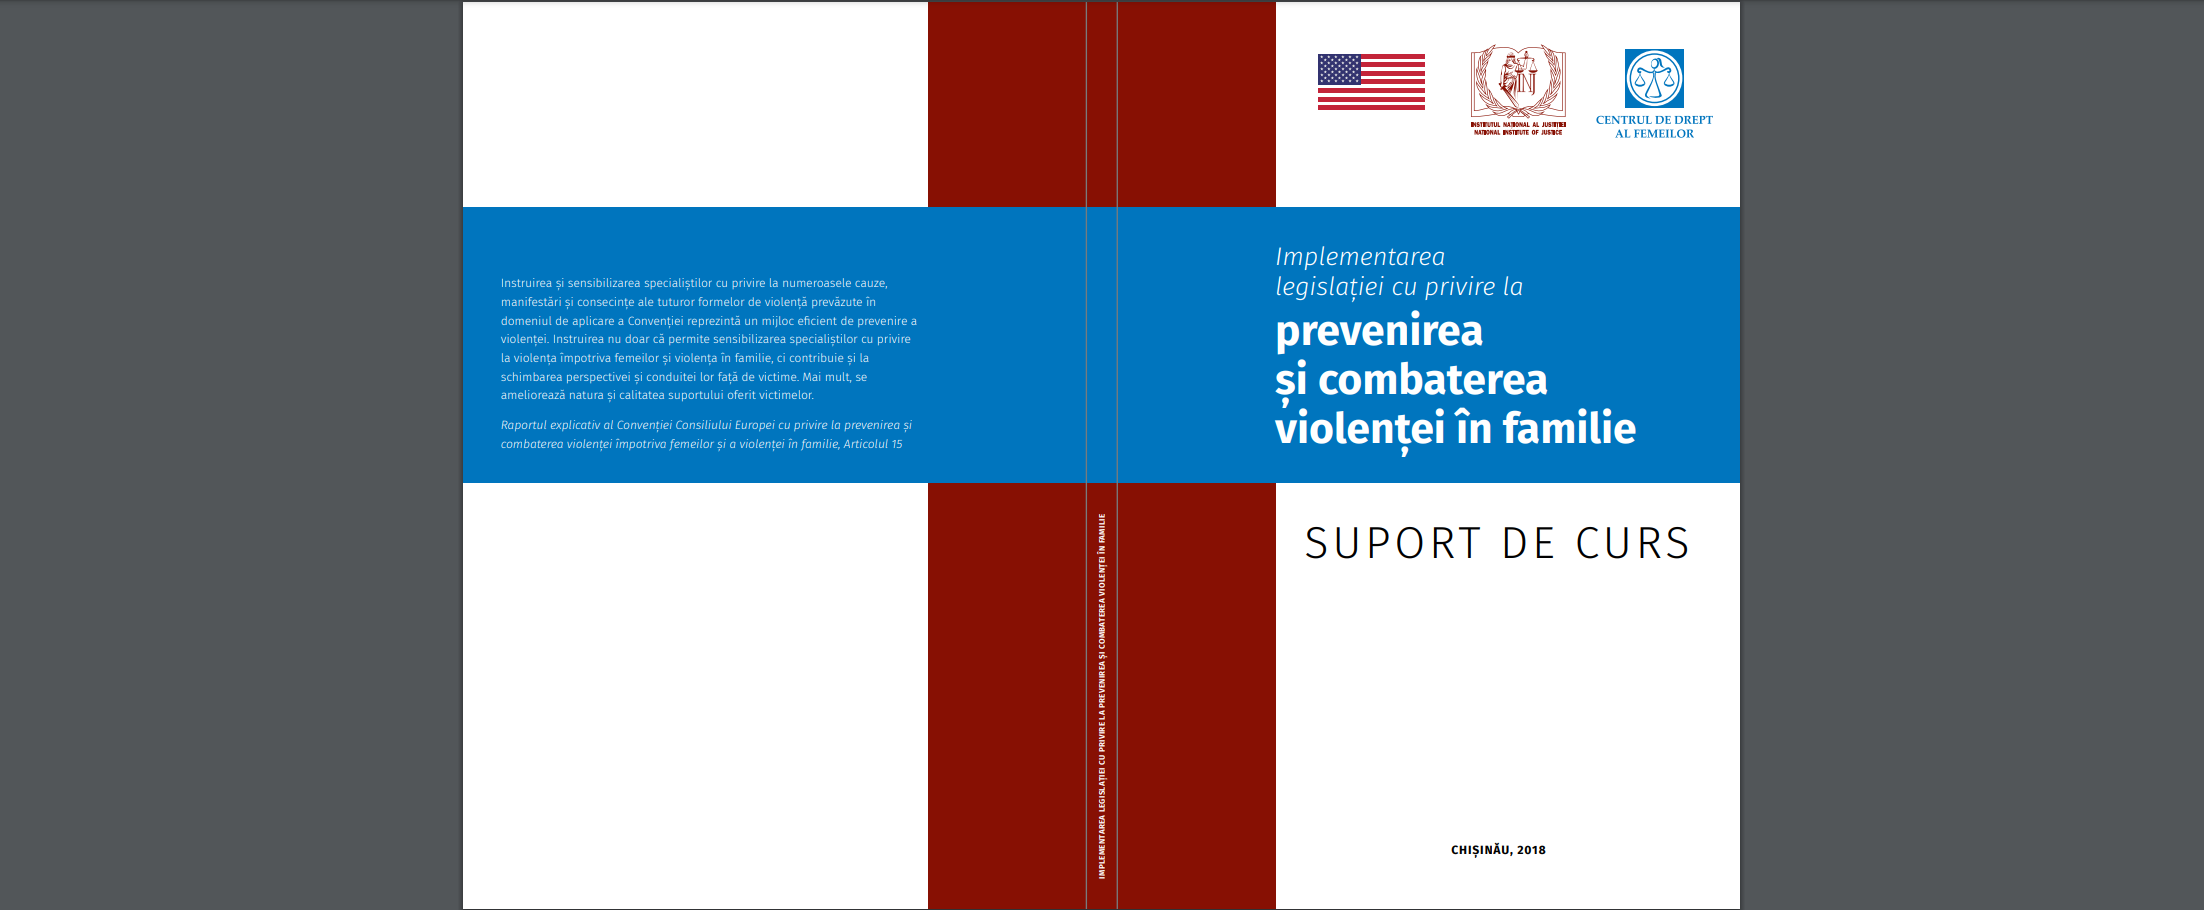 Suport de curs: Implementarea legislaței cu privire la prevenirea și combaterea violenei în familie